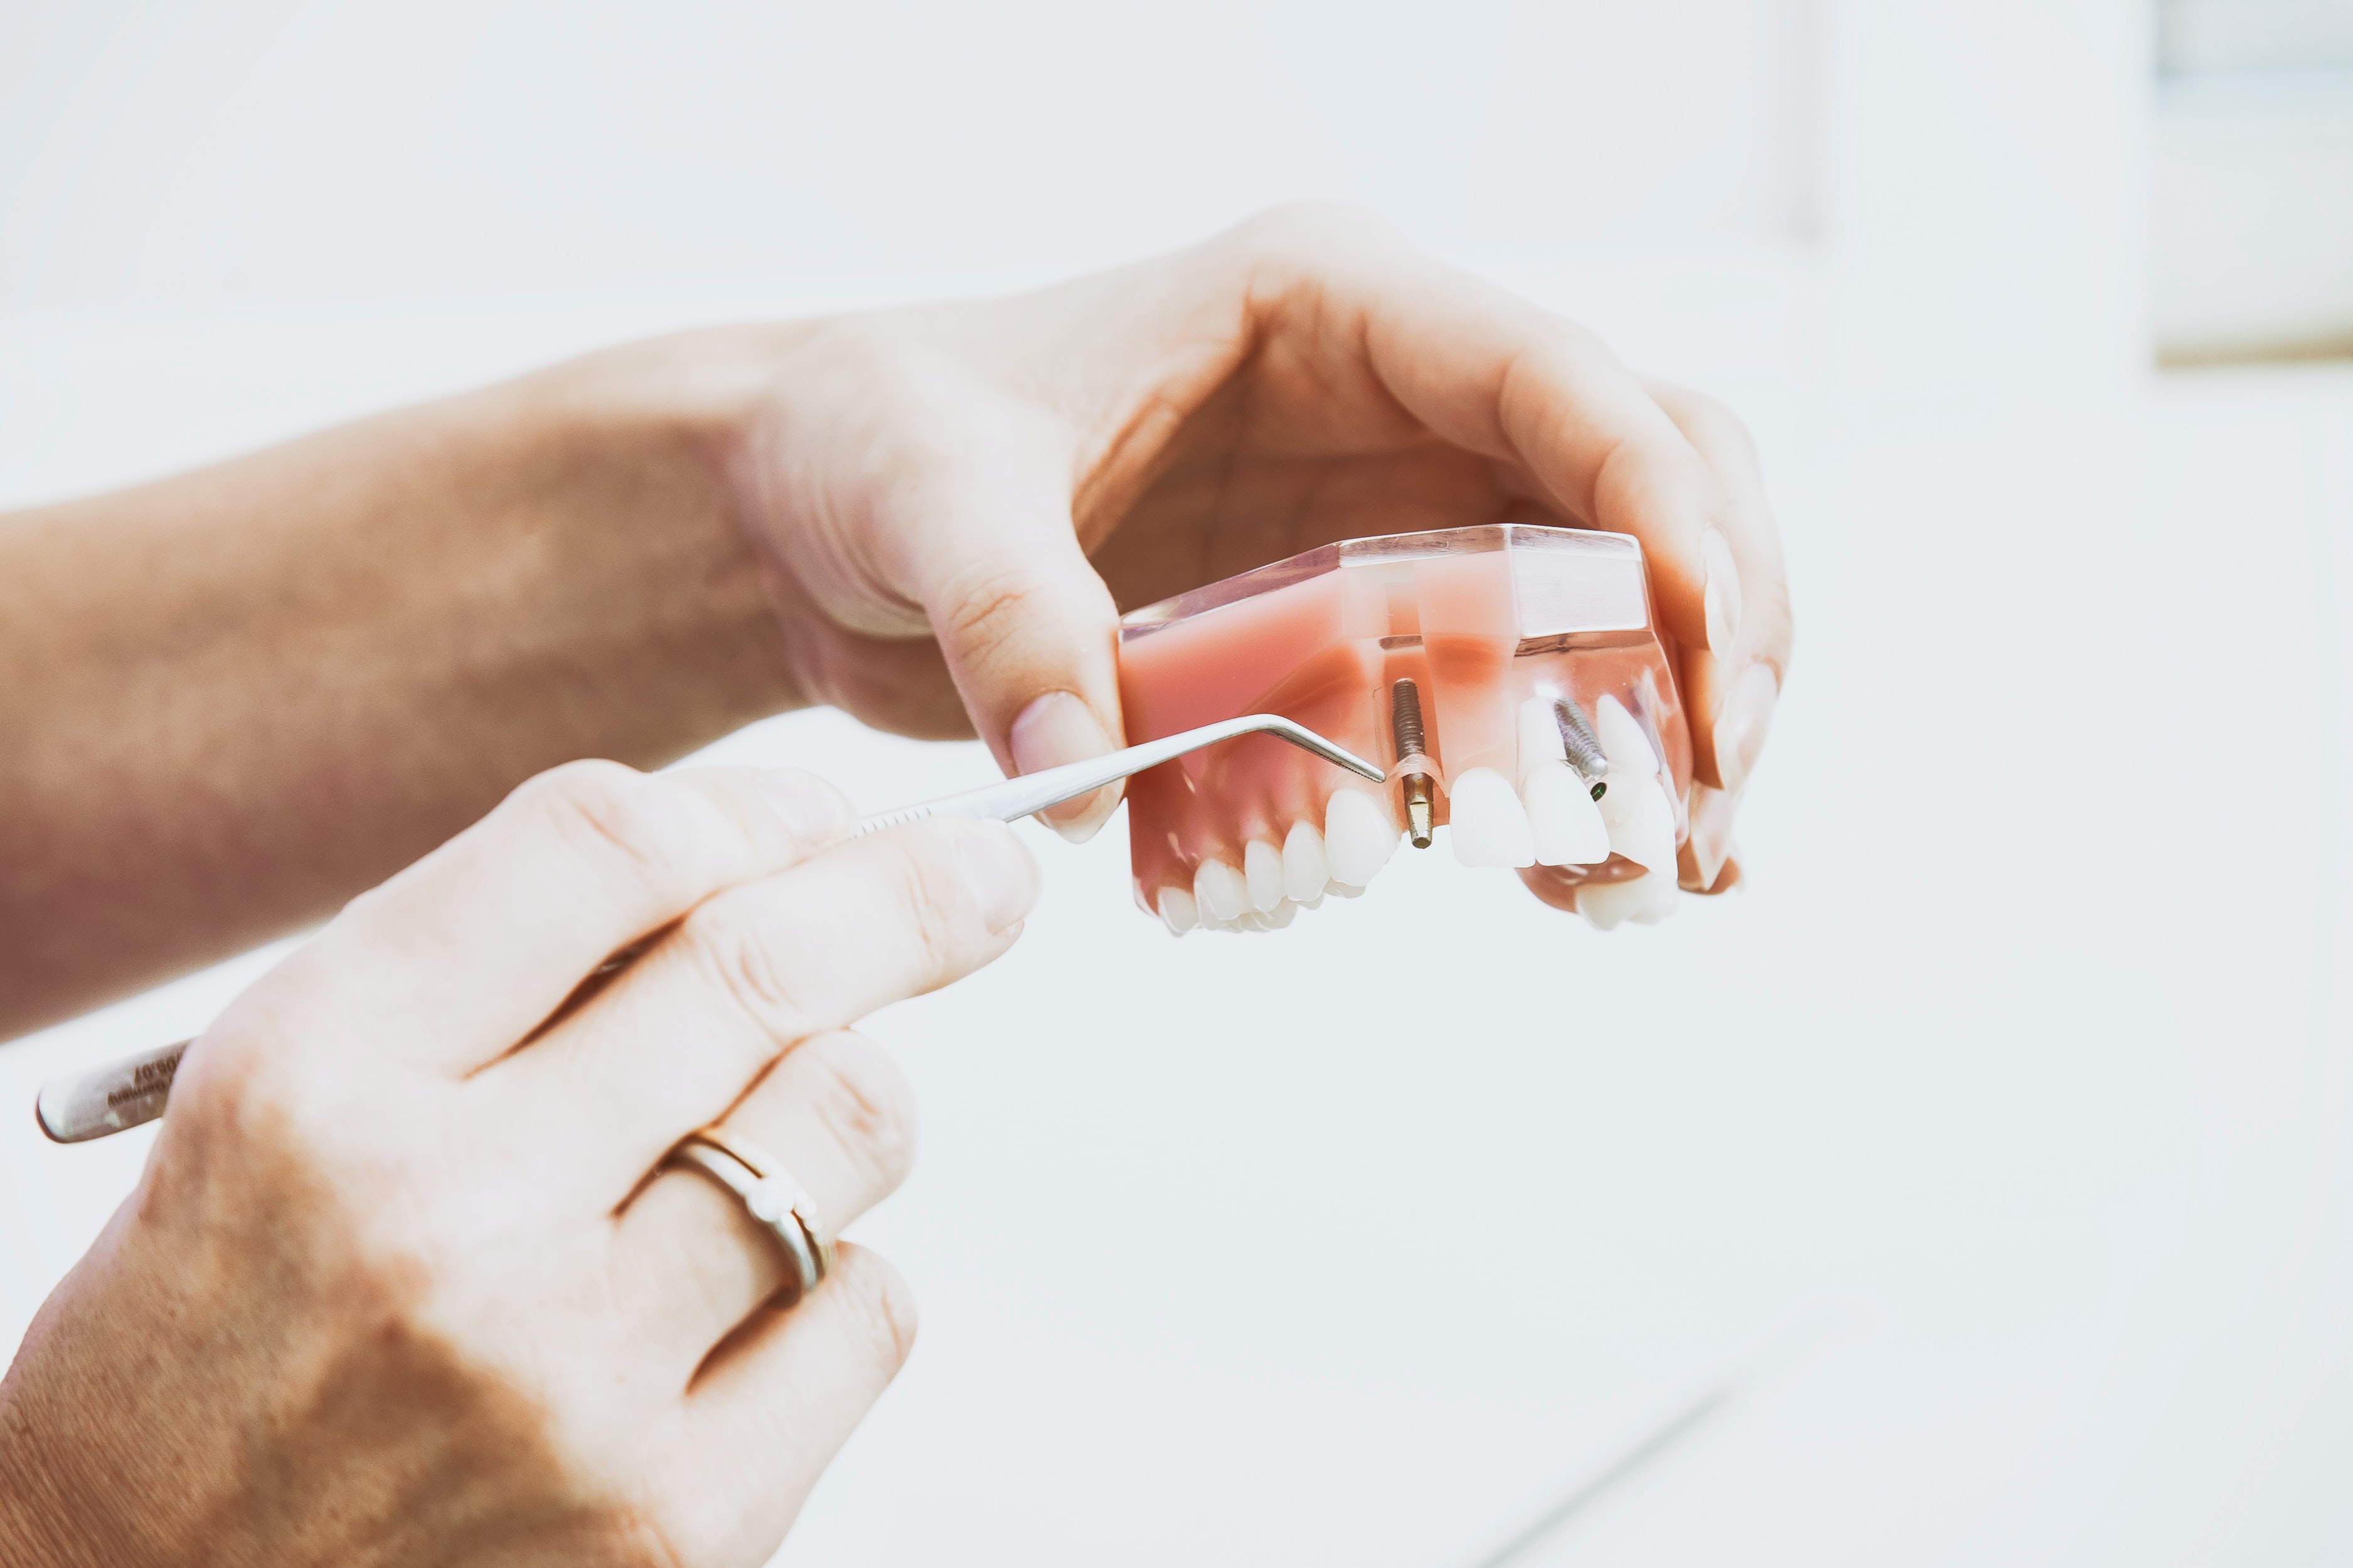 Современные зубные импланты